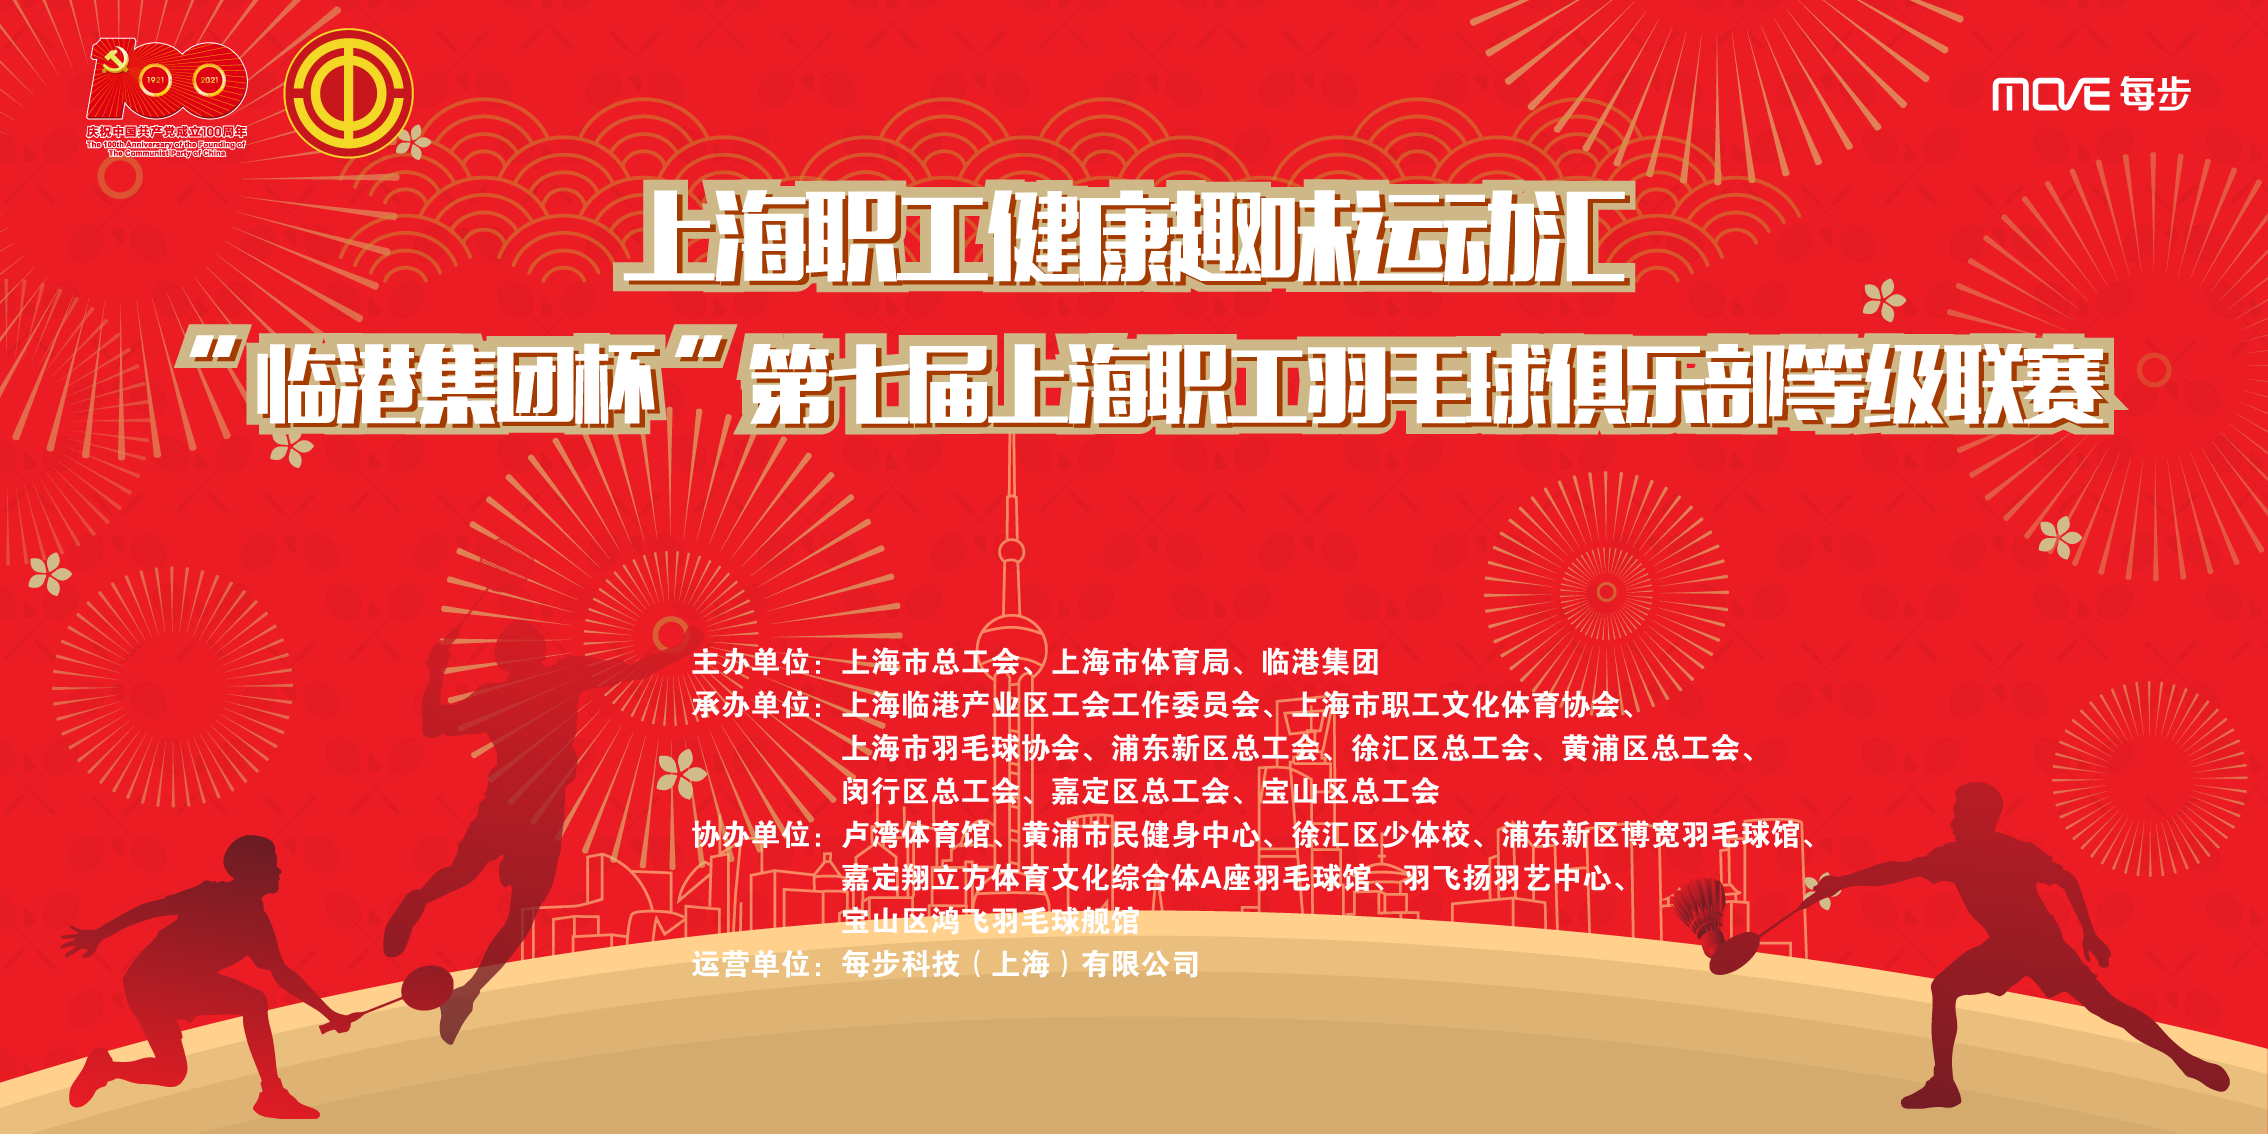 “临港集团杯”第七届上海职工羽毛球俱乐部等级联赛